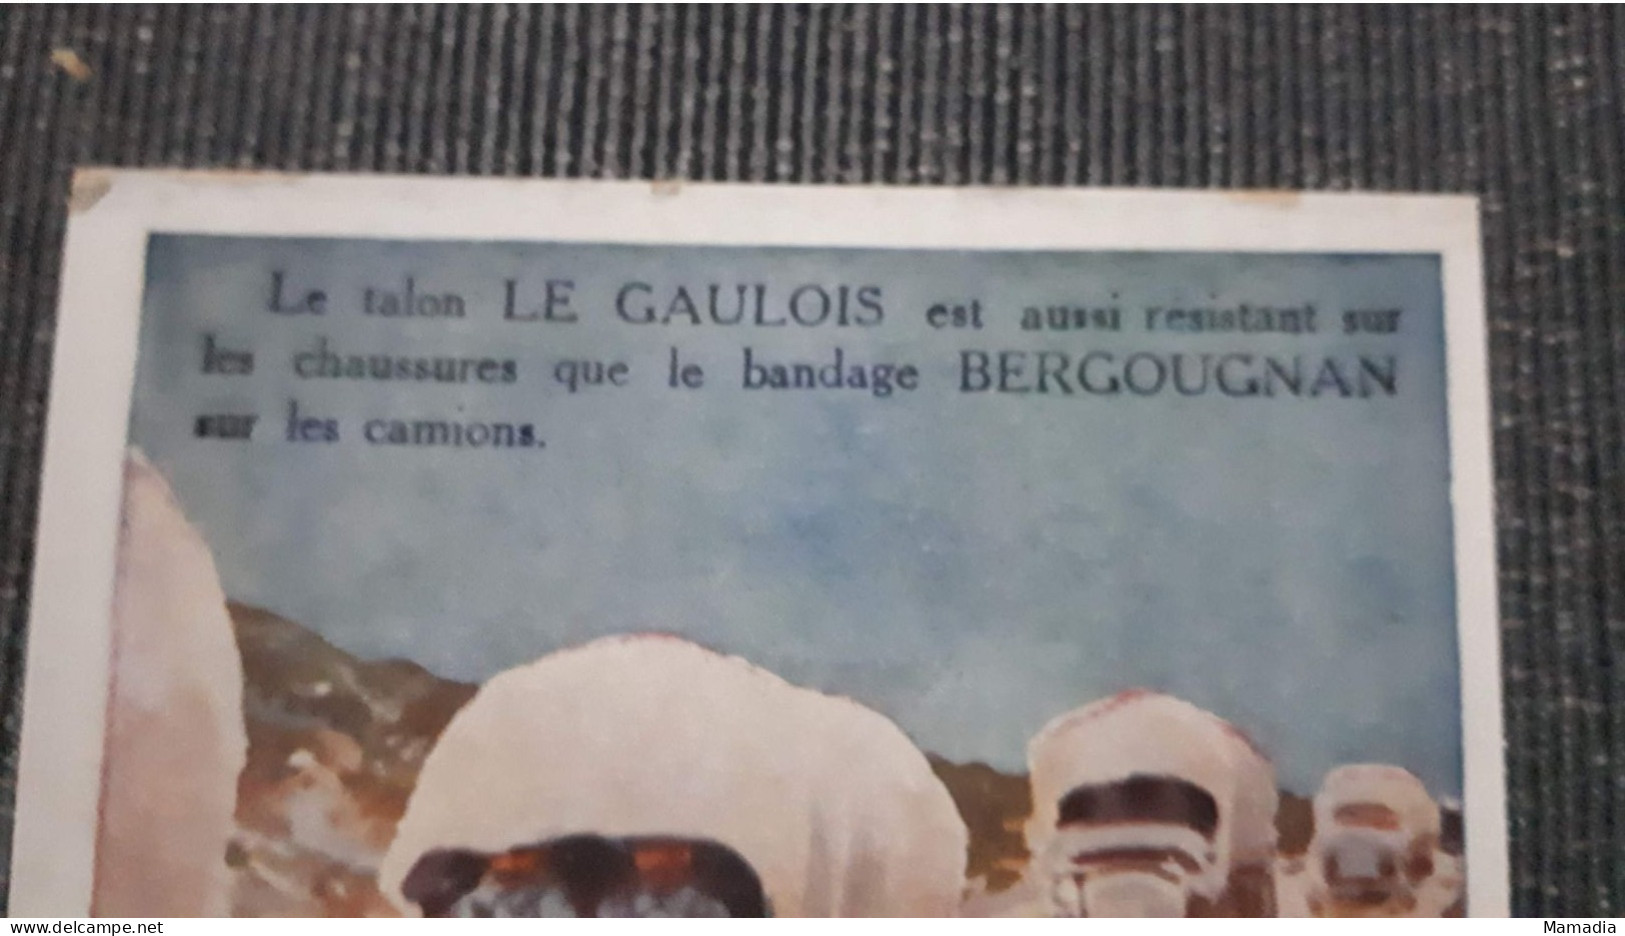 CARTE PUBLICITAIRE CAOUTCHOUC BANDAGES ETS BERGOUGNAN TALON LE GAULOIS  T. SALA - Publicité